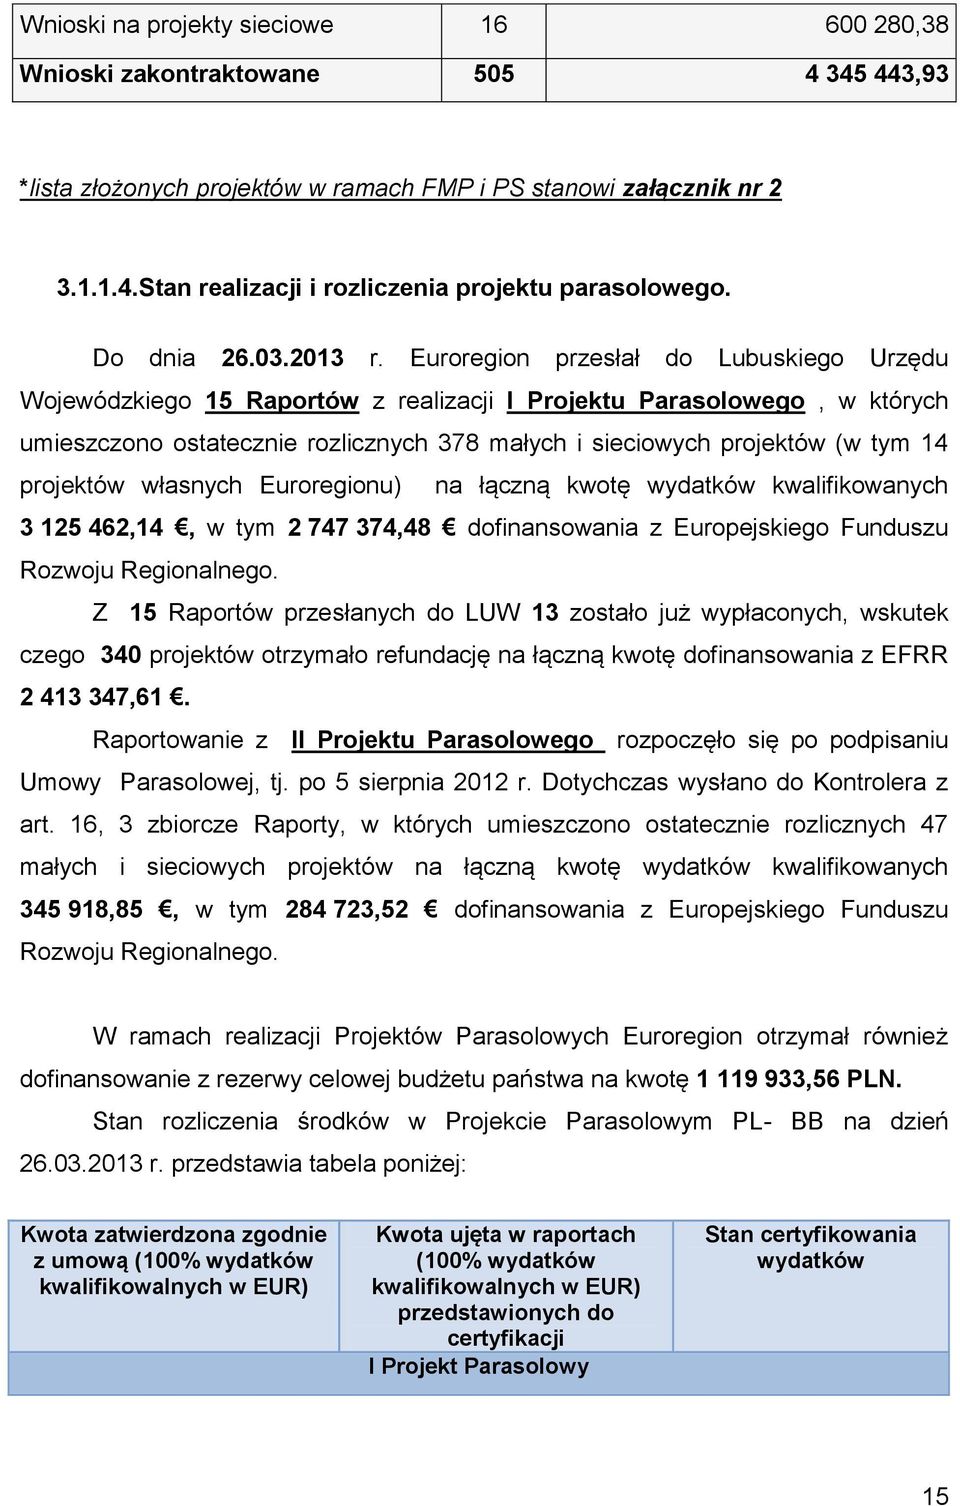 Euroregion przesłał do Lubuskiego Urzędu Wojewódzkiego 15 Raportów z realizacji I Projektu Parasolowego, w których umieszczono ostatecznie rozlicznych 378 małych i sieciowych projektów (w tym 14